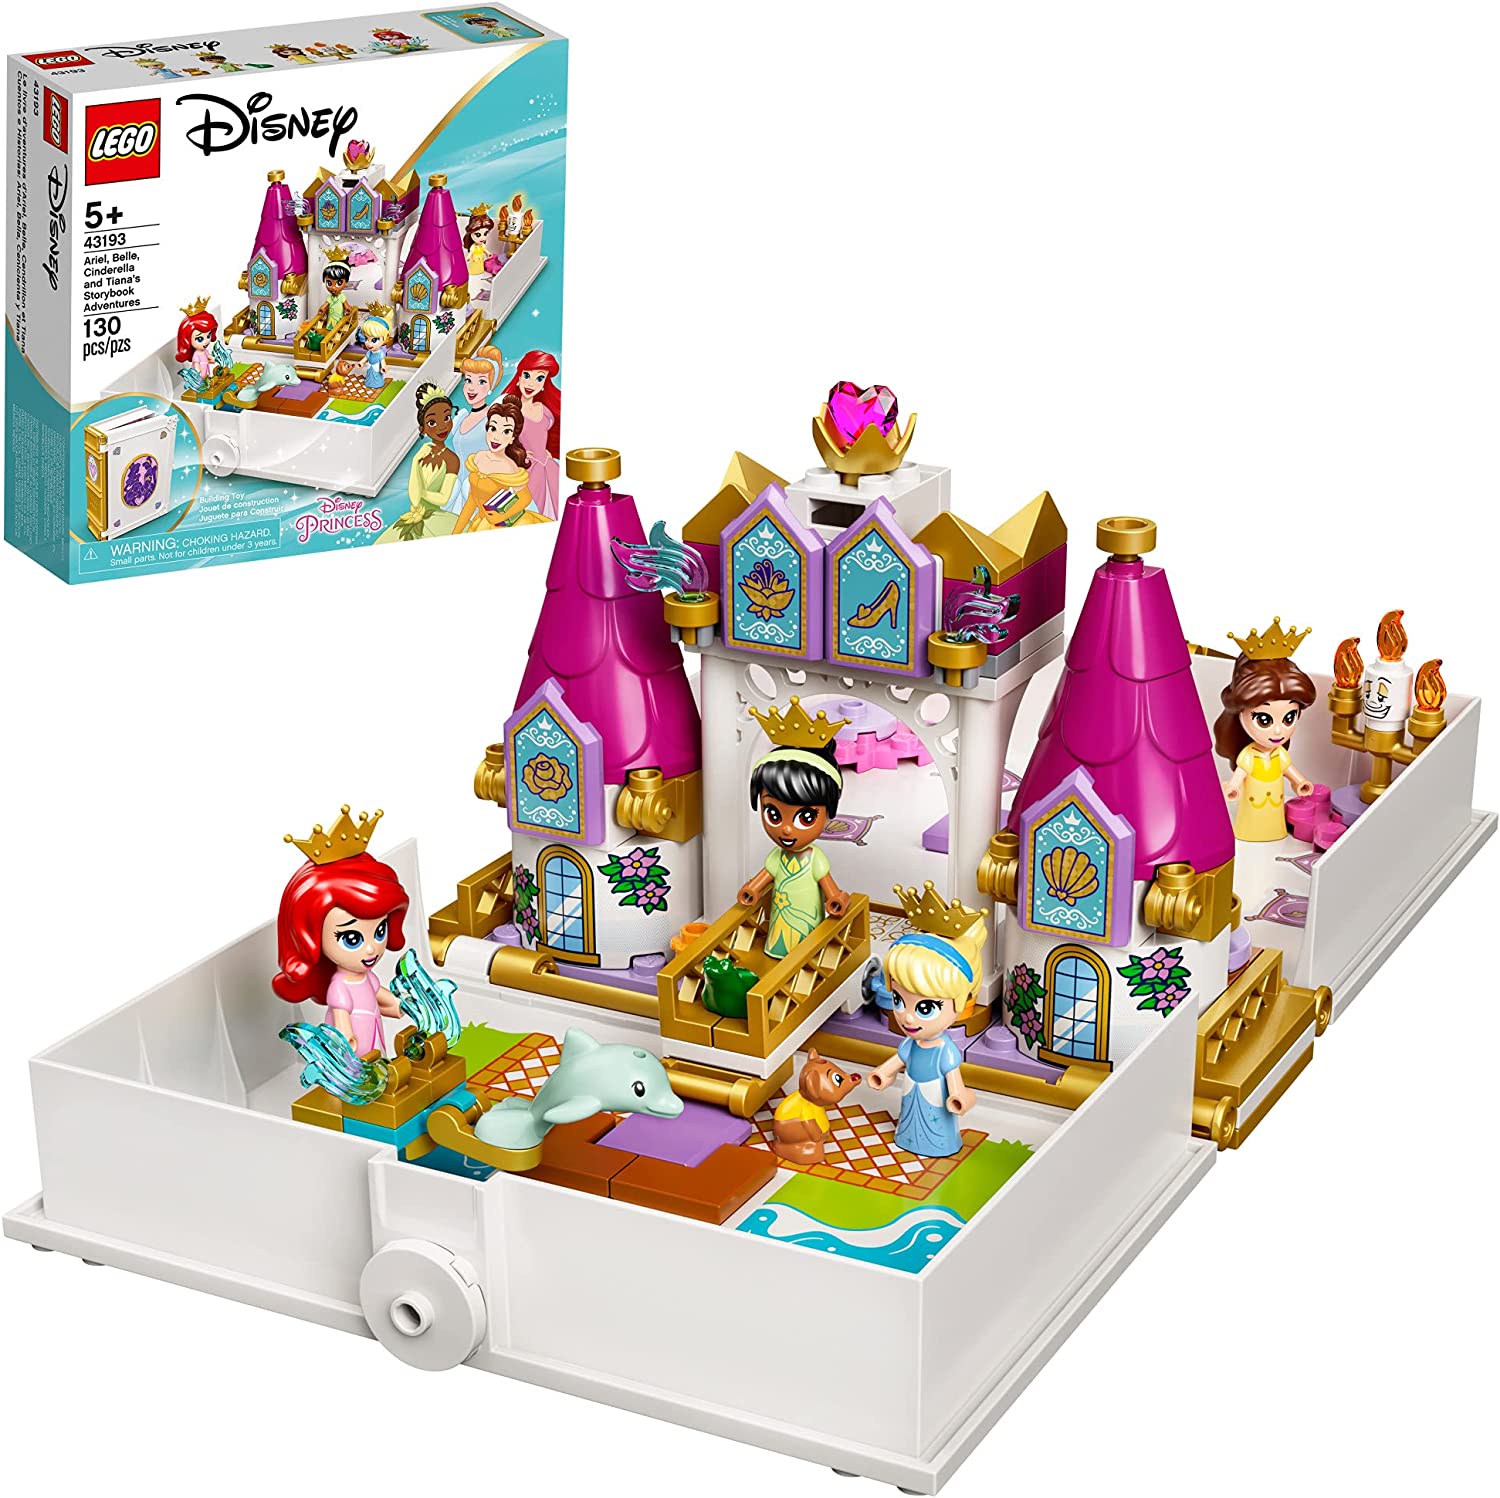 LEGO DISNEY PRINCESS - Câu chuyện phiêu lưu của Ariel, Belle, Cinderella và  Tiana - 43193 - Đồ chơi Lego cho bé gái, tuổi 5+ (130 pcs) 